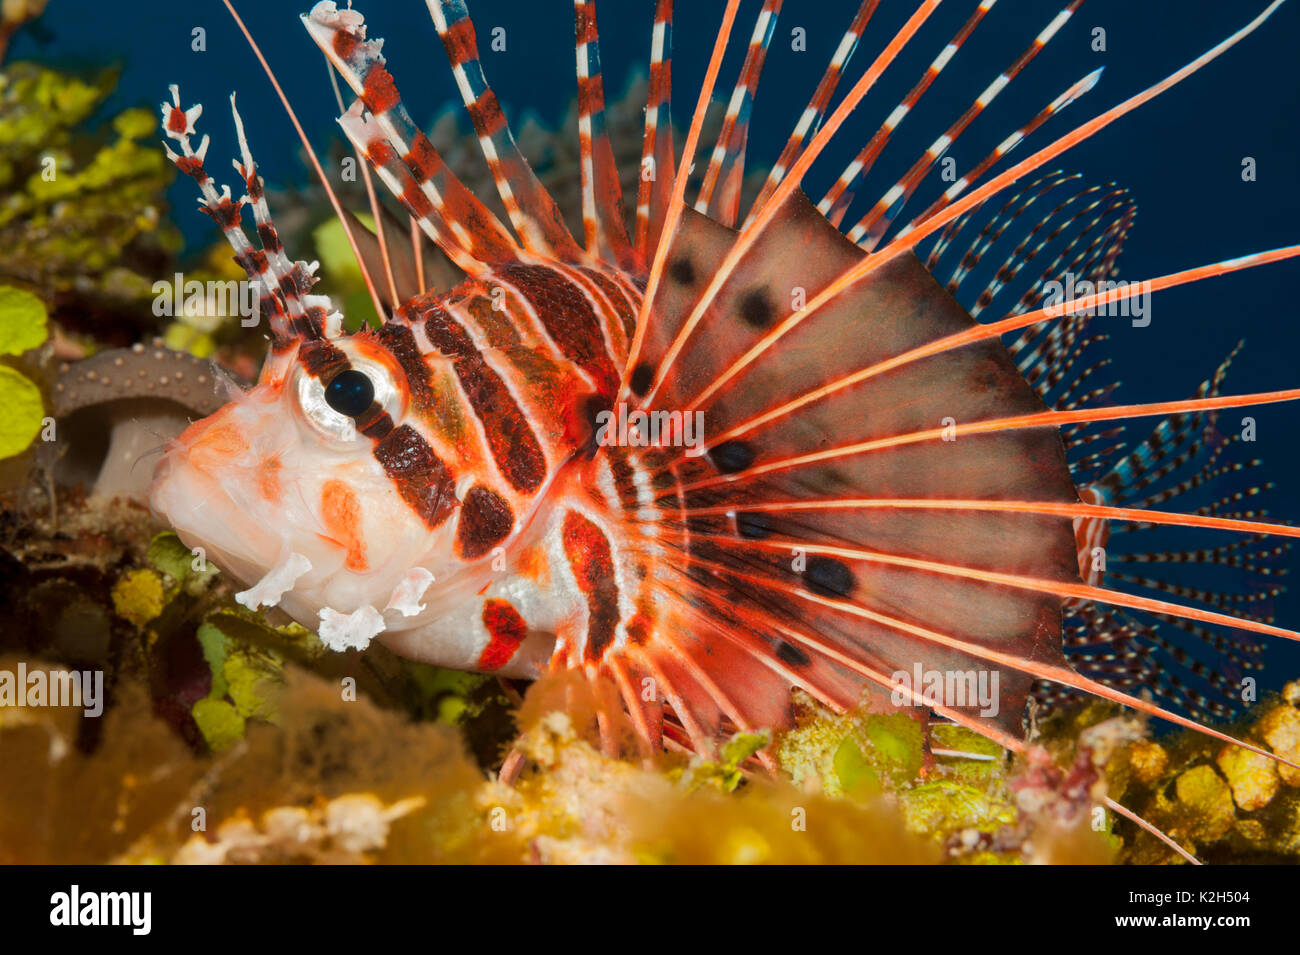 Broadfin Firefish, le poisson Lion, Antennata Poisson-papillon, Ragged-Firefish (Pterois antennata à ailettes) reposant sur un récif de corail.. Banque D'Images